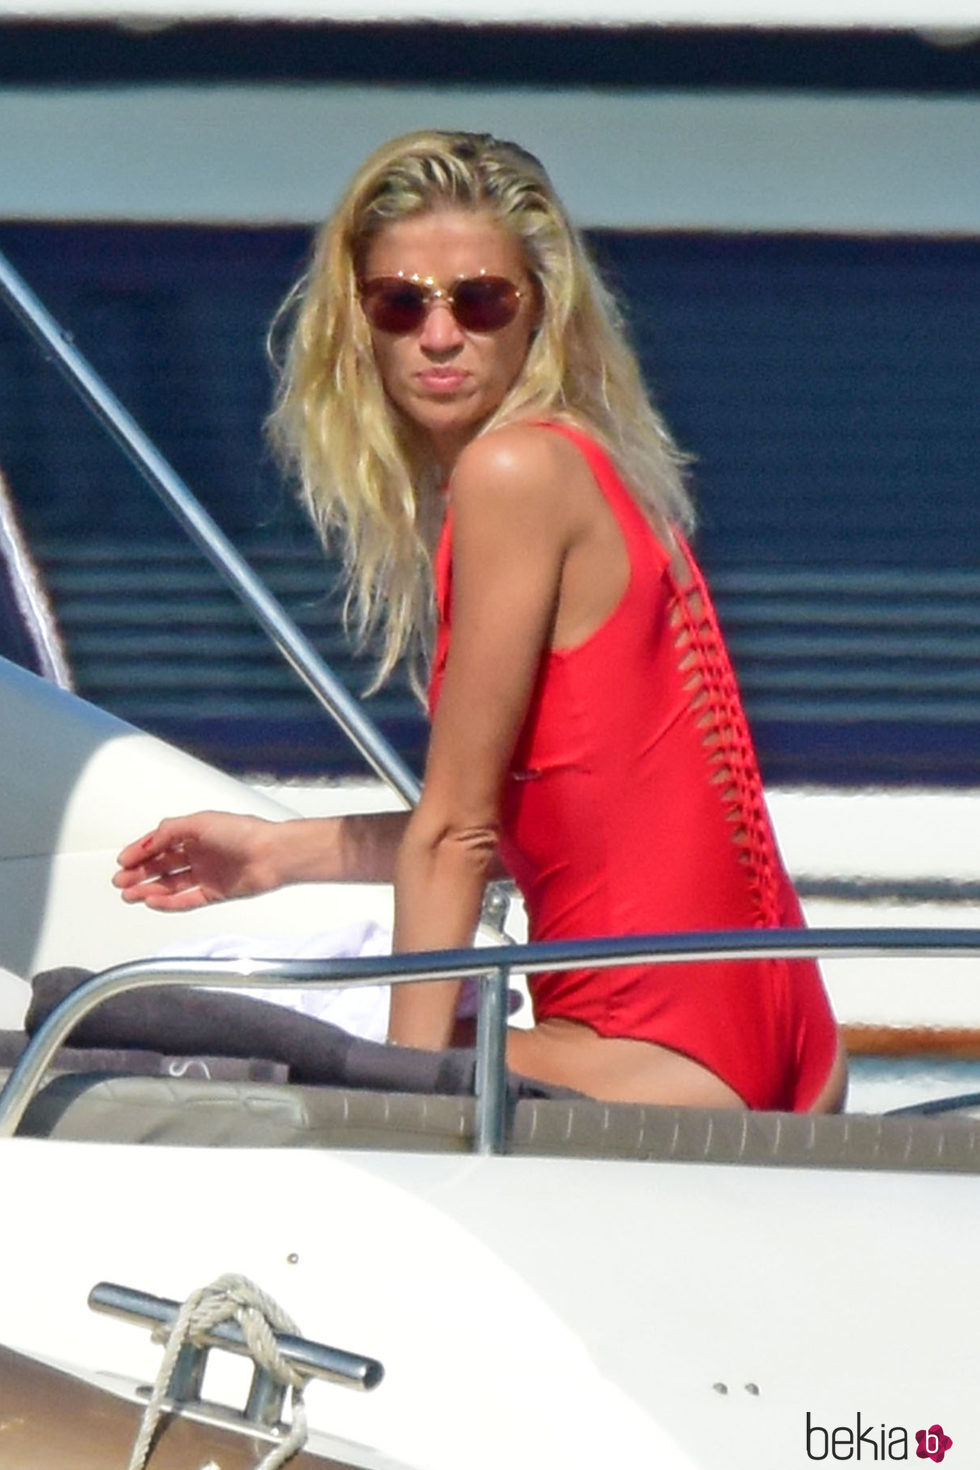 Carla Pereyra luciendo bañador rojo en Formentera